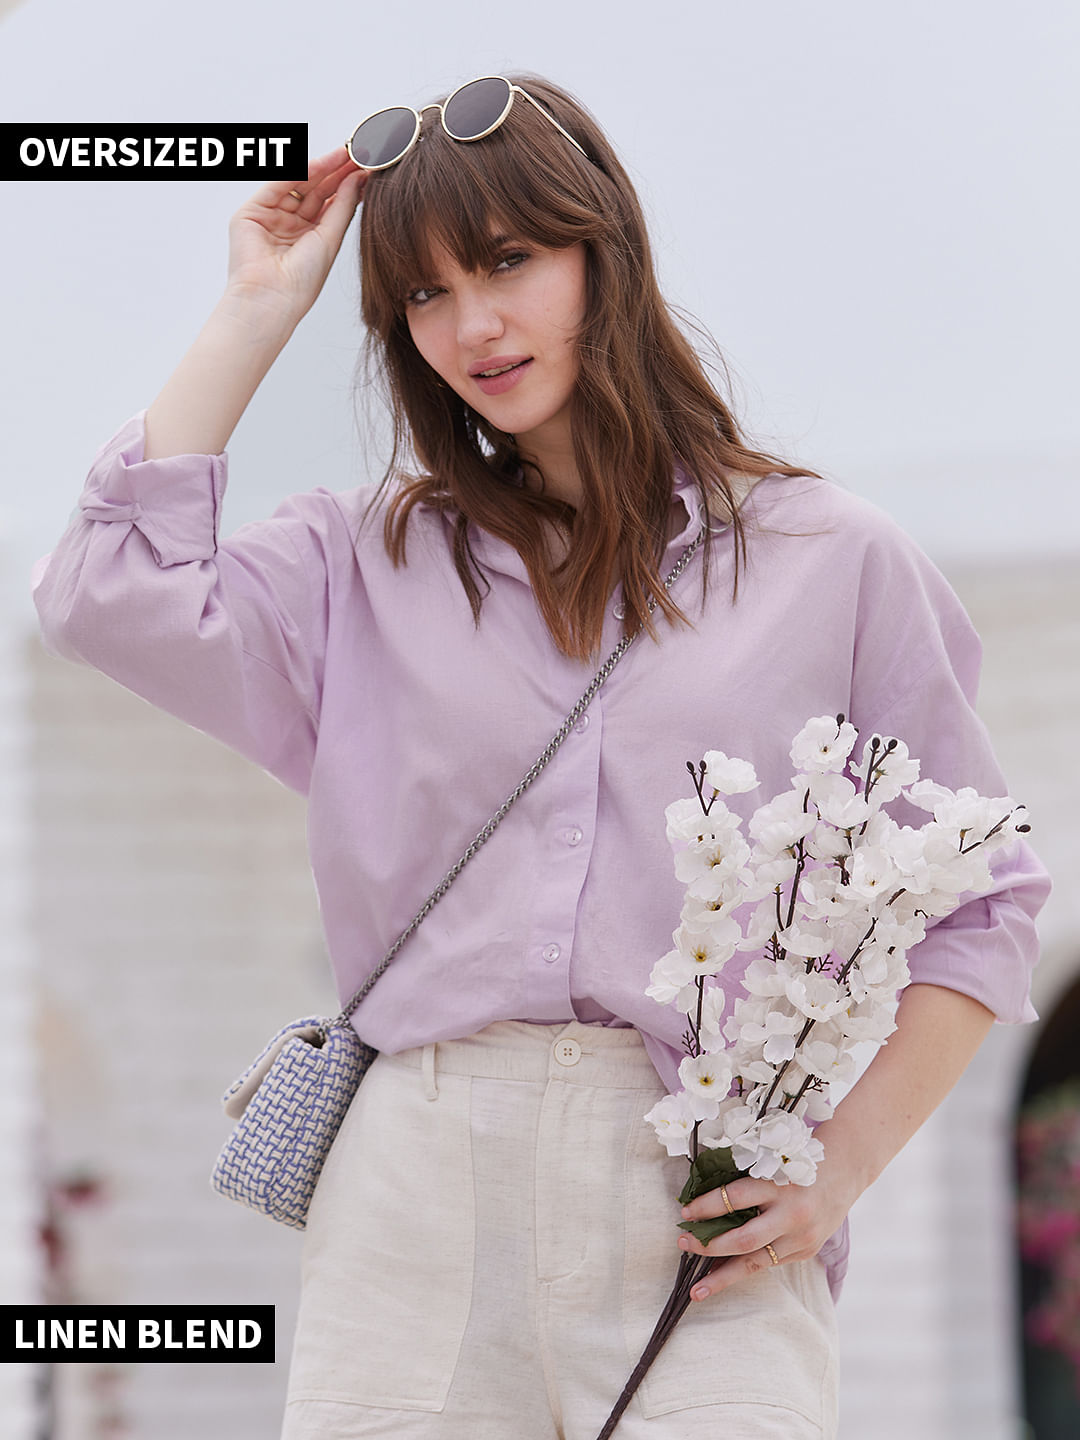 Lavender Linen Shirt - Condotti Store